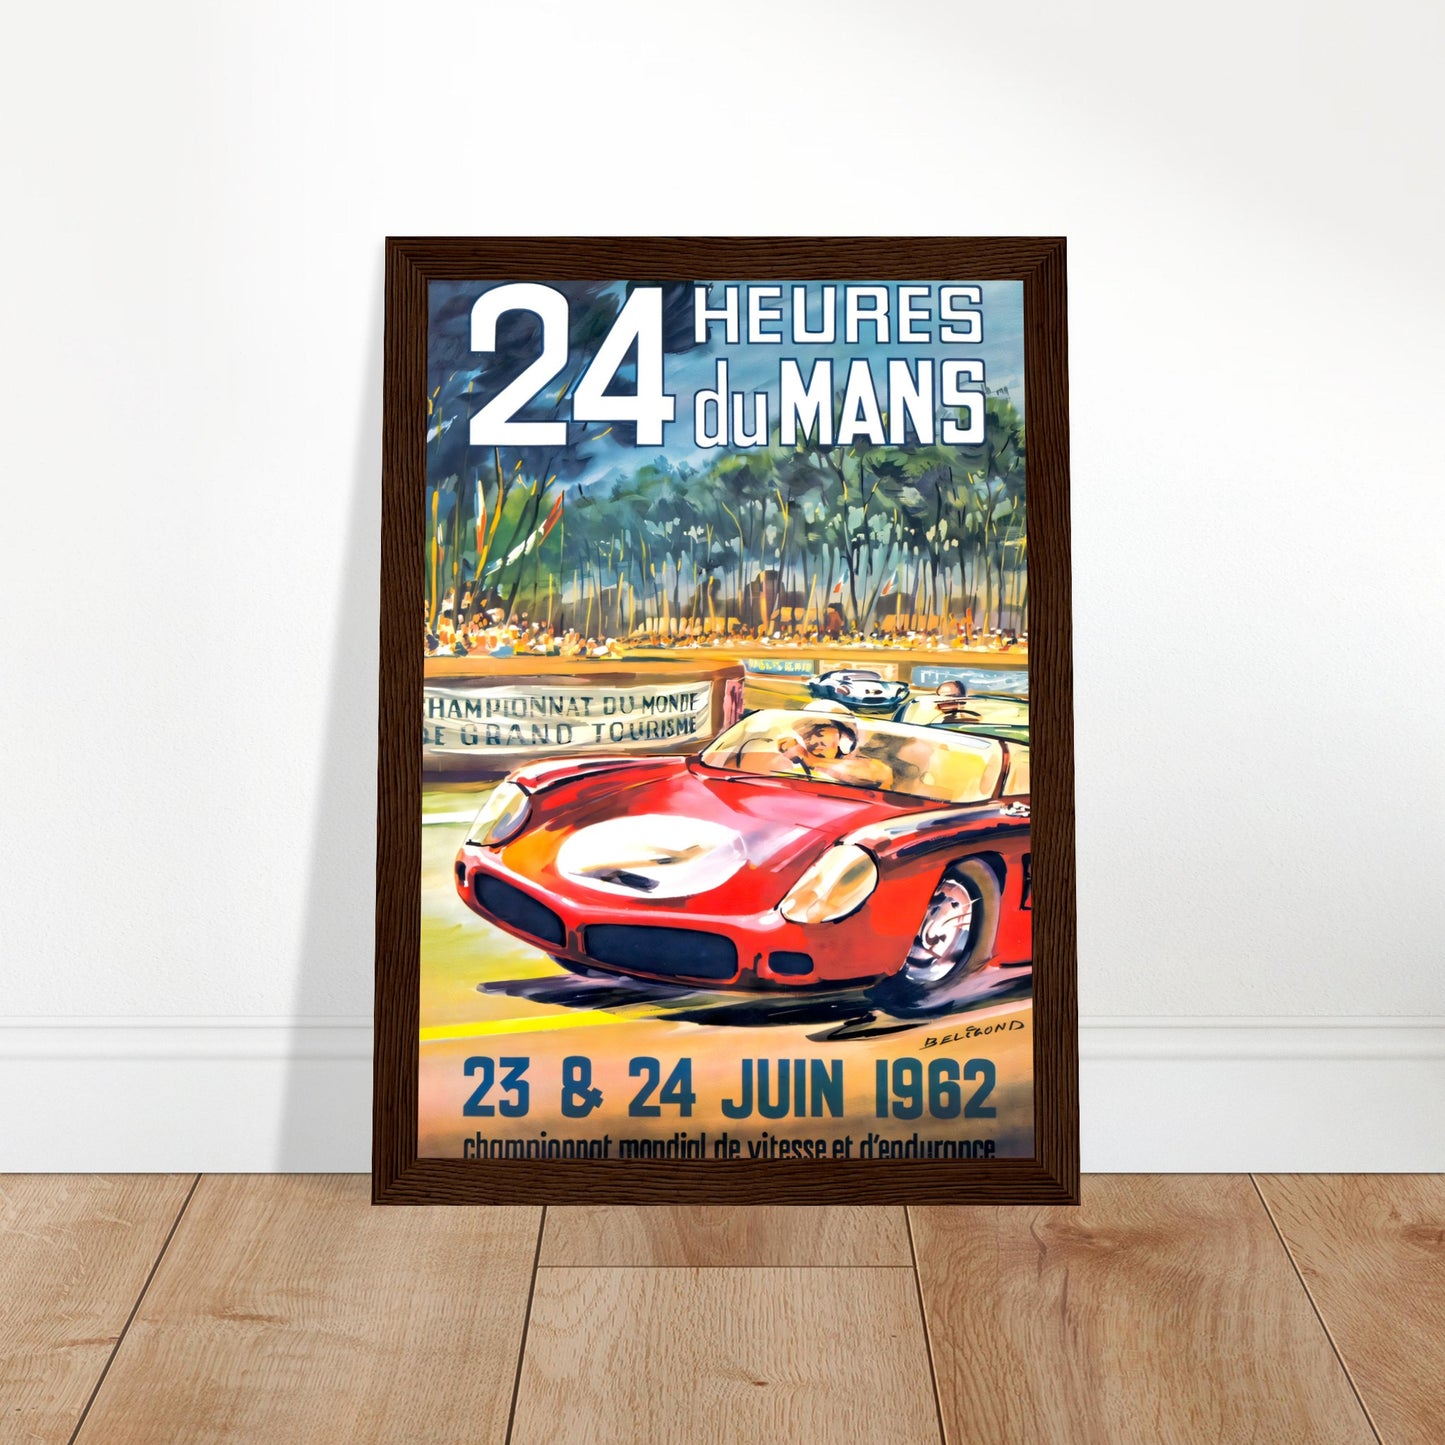 Le Mans Vintage Poster Reprint on Premium Matte Paper - Posterify